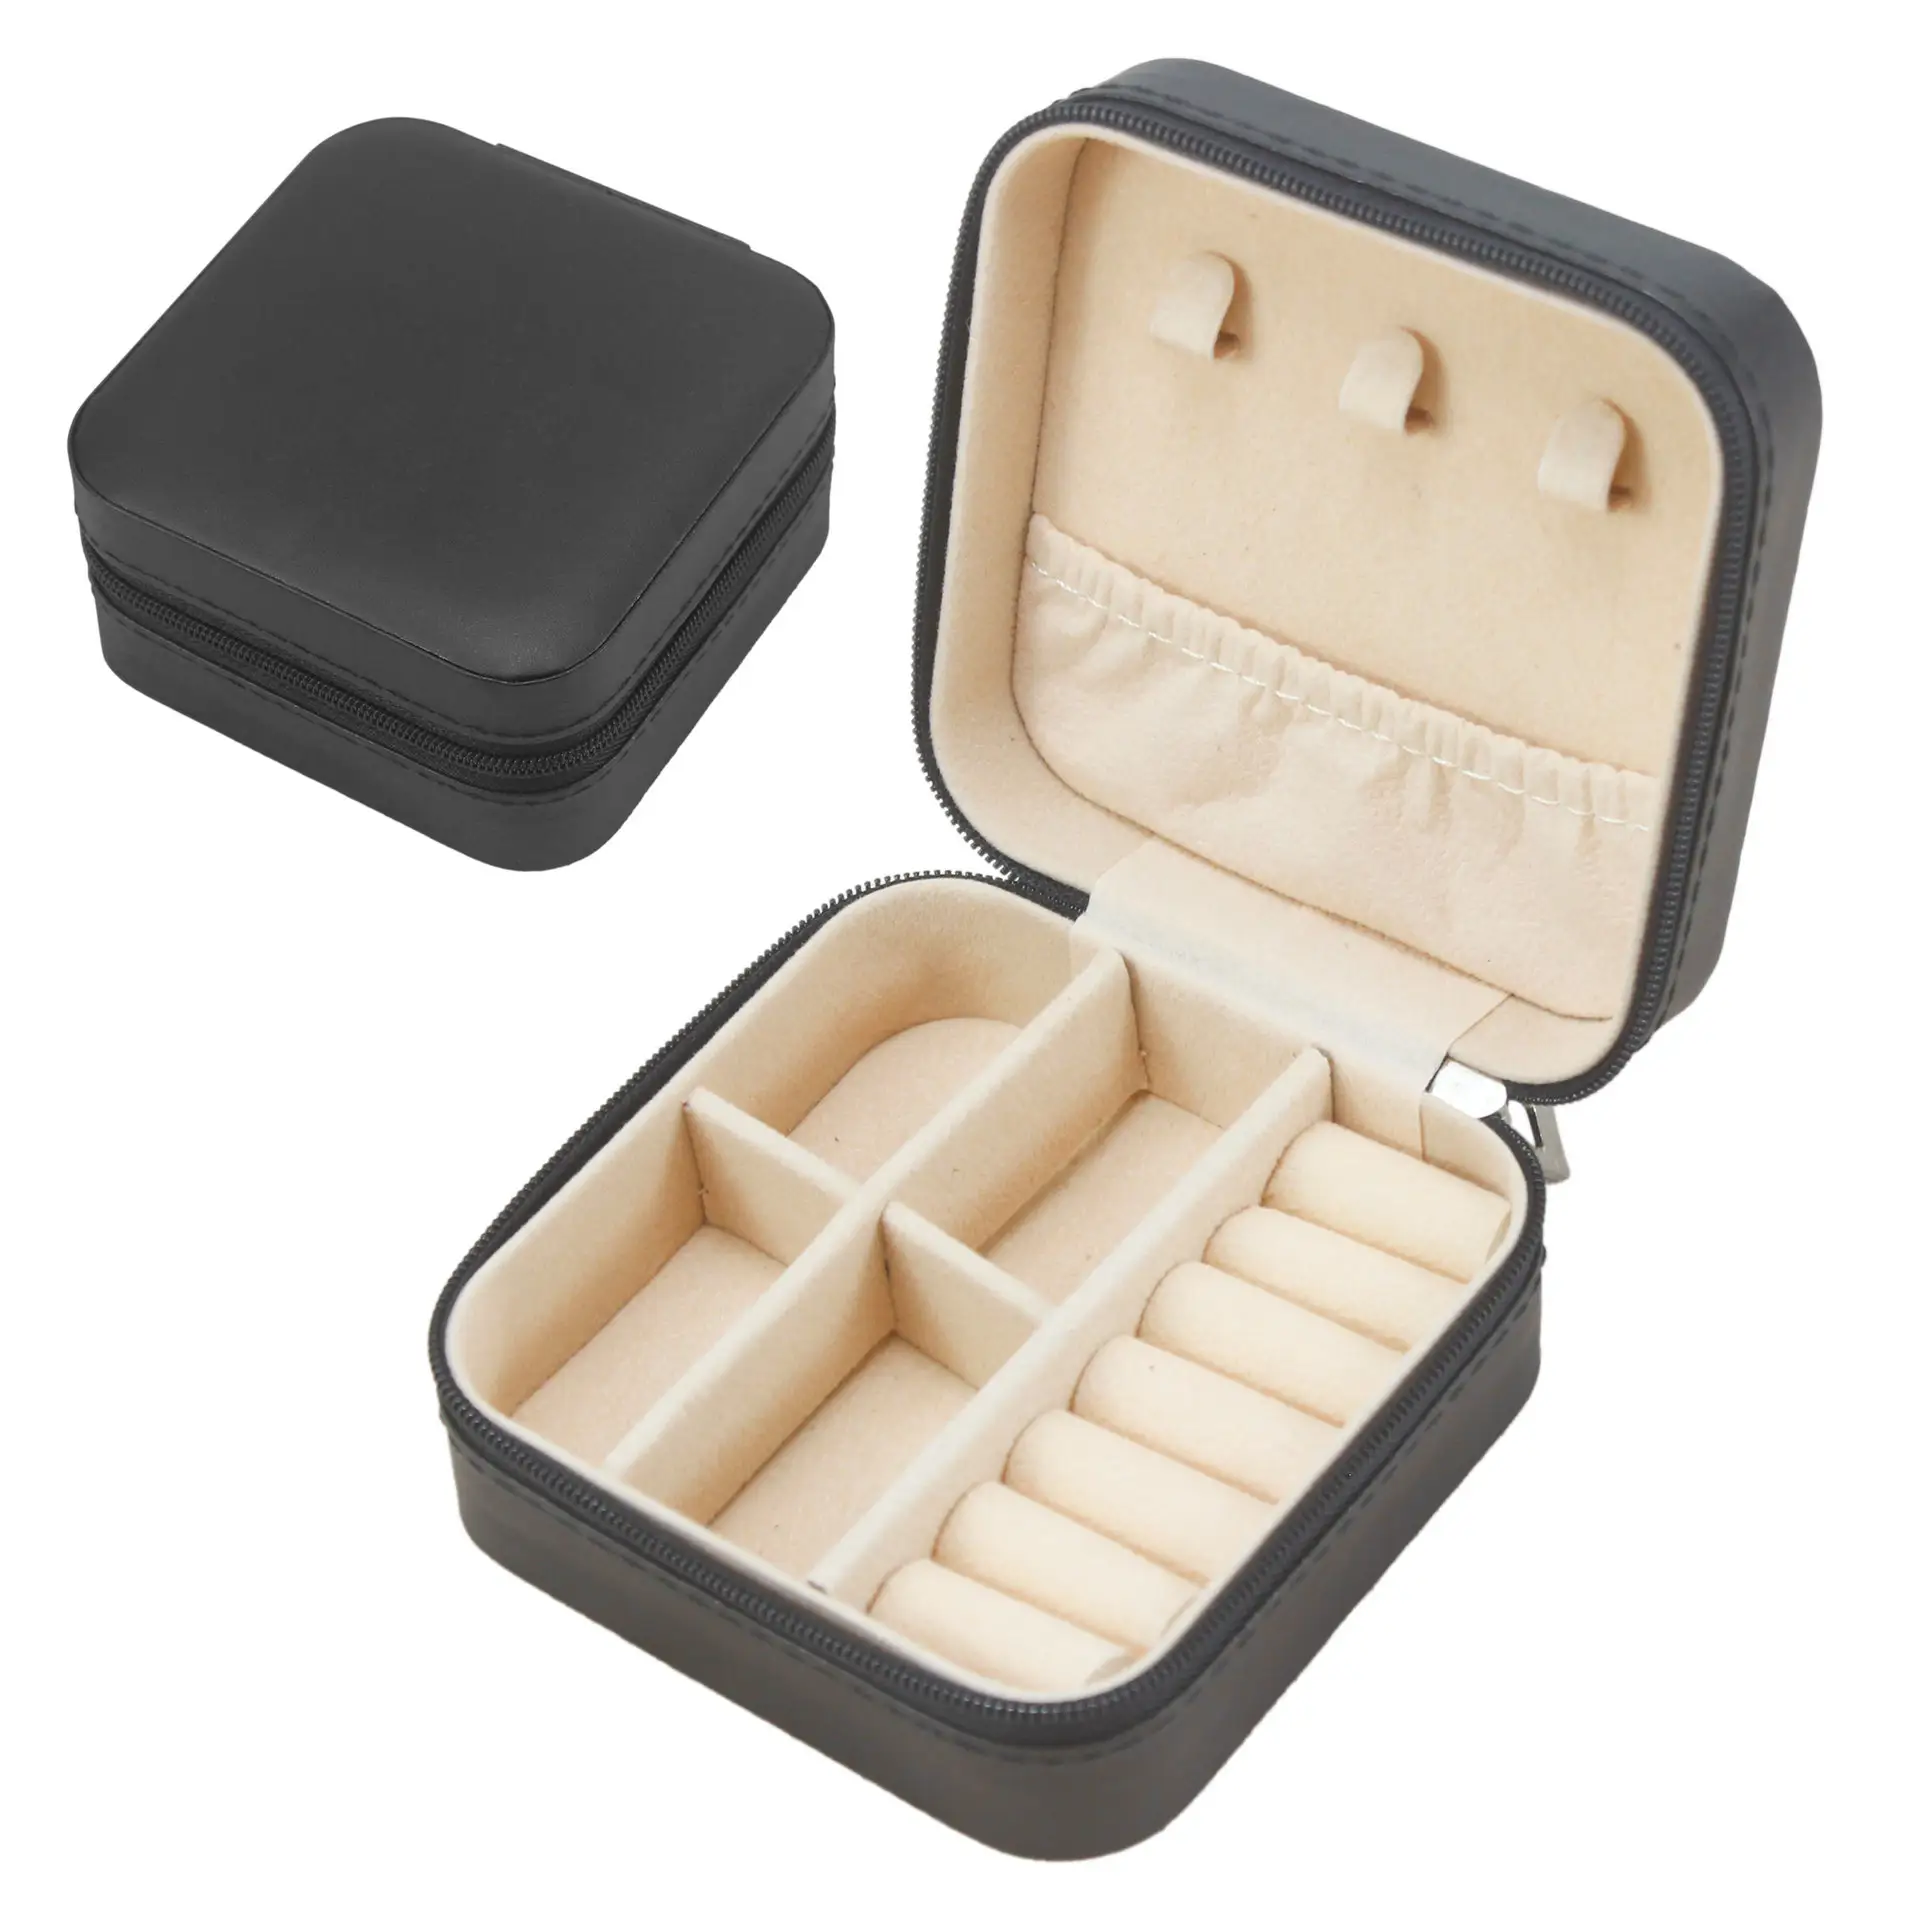 Schlussverkauf Mini-Schmuck-Vorführbox Organisator tragbar Luxus-Schmuck-Vorratsbox Leder kleines Reise-Schmuckgeschirr Großhandel